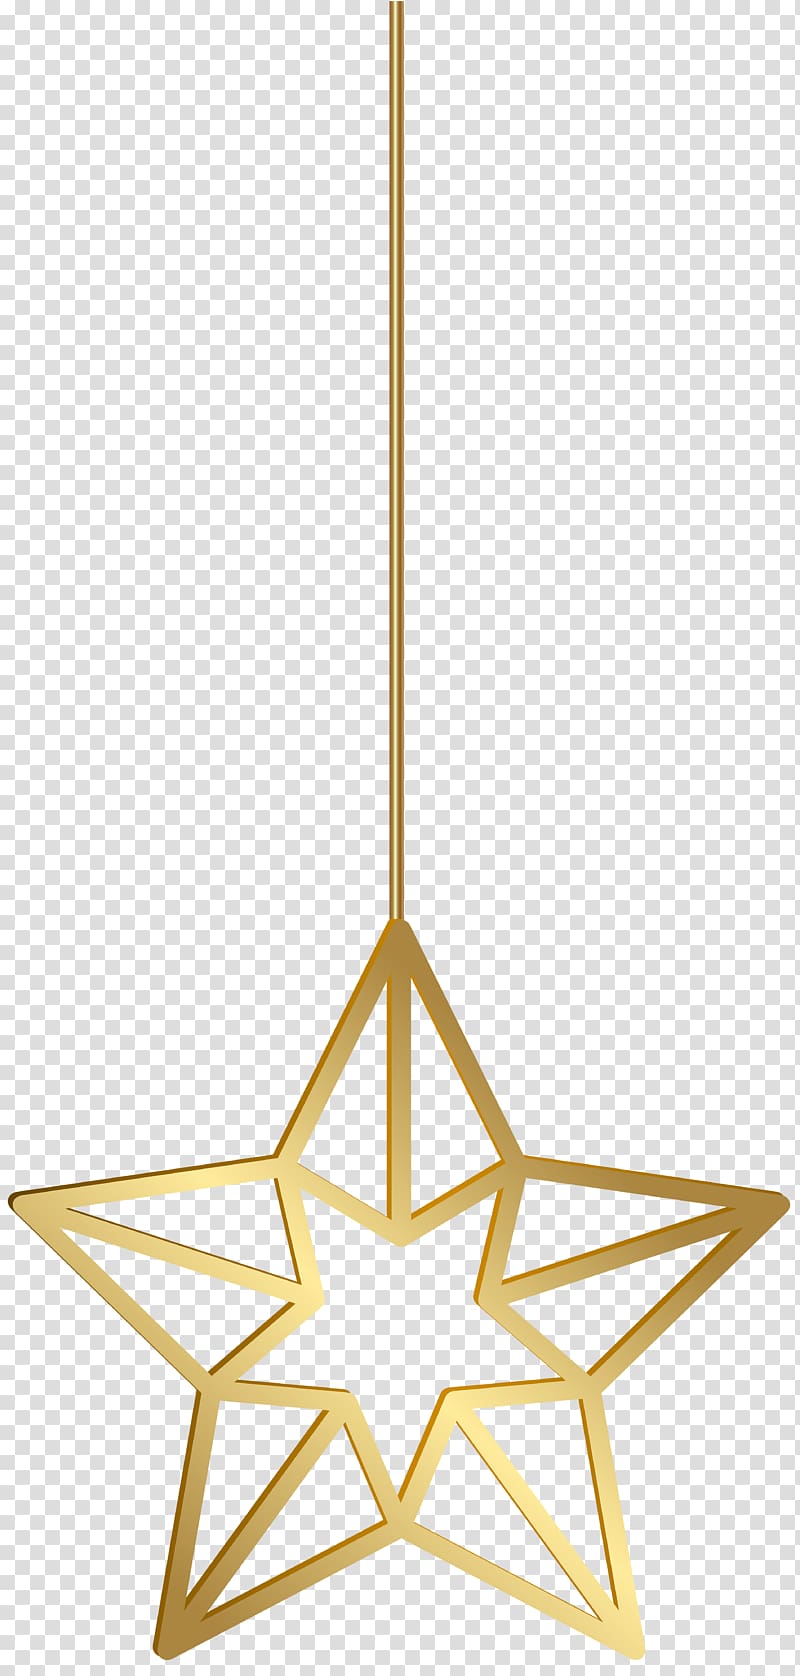 gold star lantern illustration, Star Gold , Hanging Star Gold transparent background PNG clipart